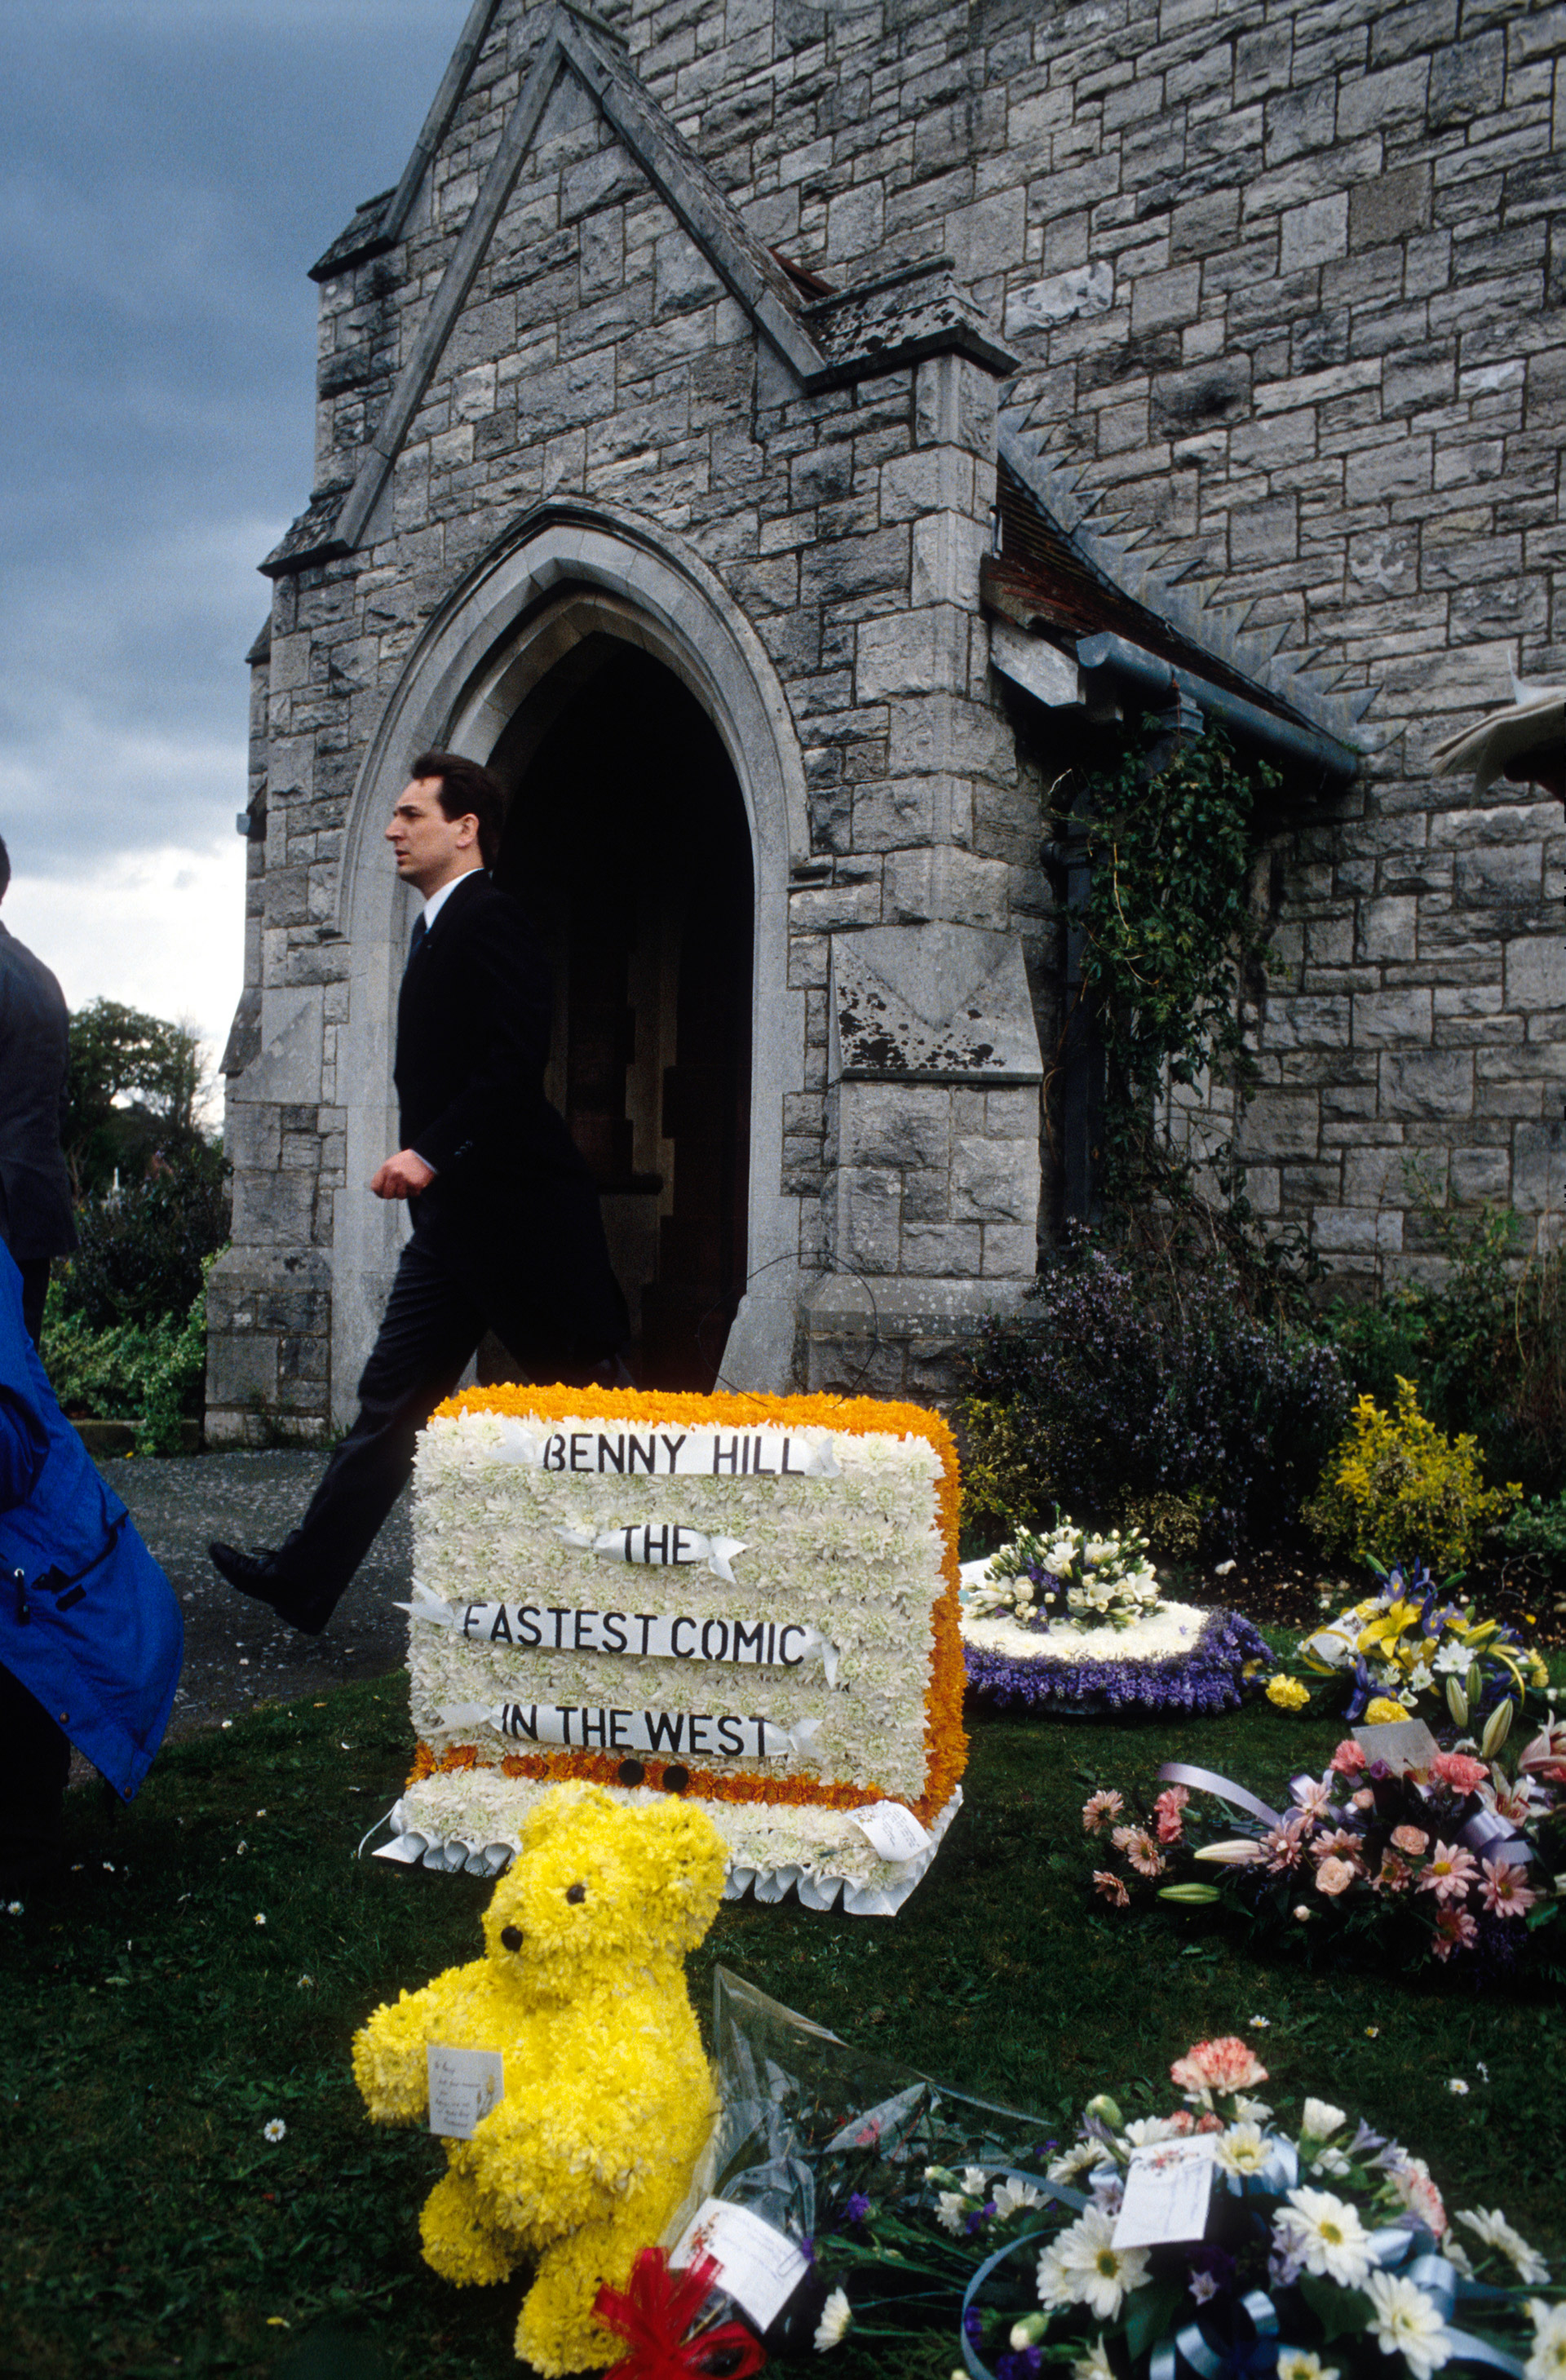 "El cómico más rápido del Oeste", reza el bouquet de flores en el funeral de Benny Hill  (Photo by Mathieu Polak/Sygma via Getty Images)